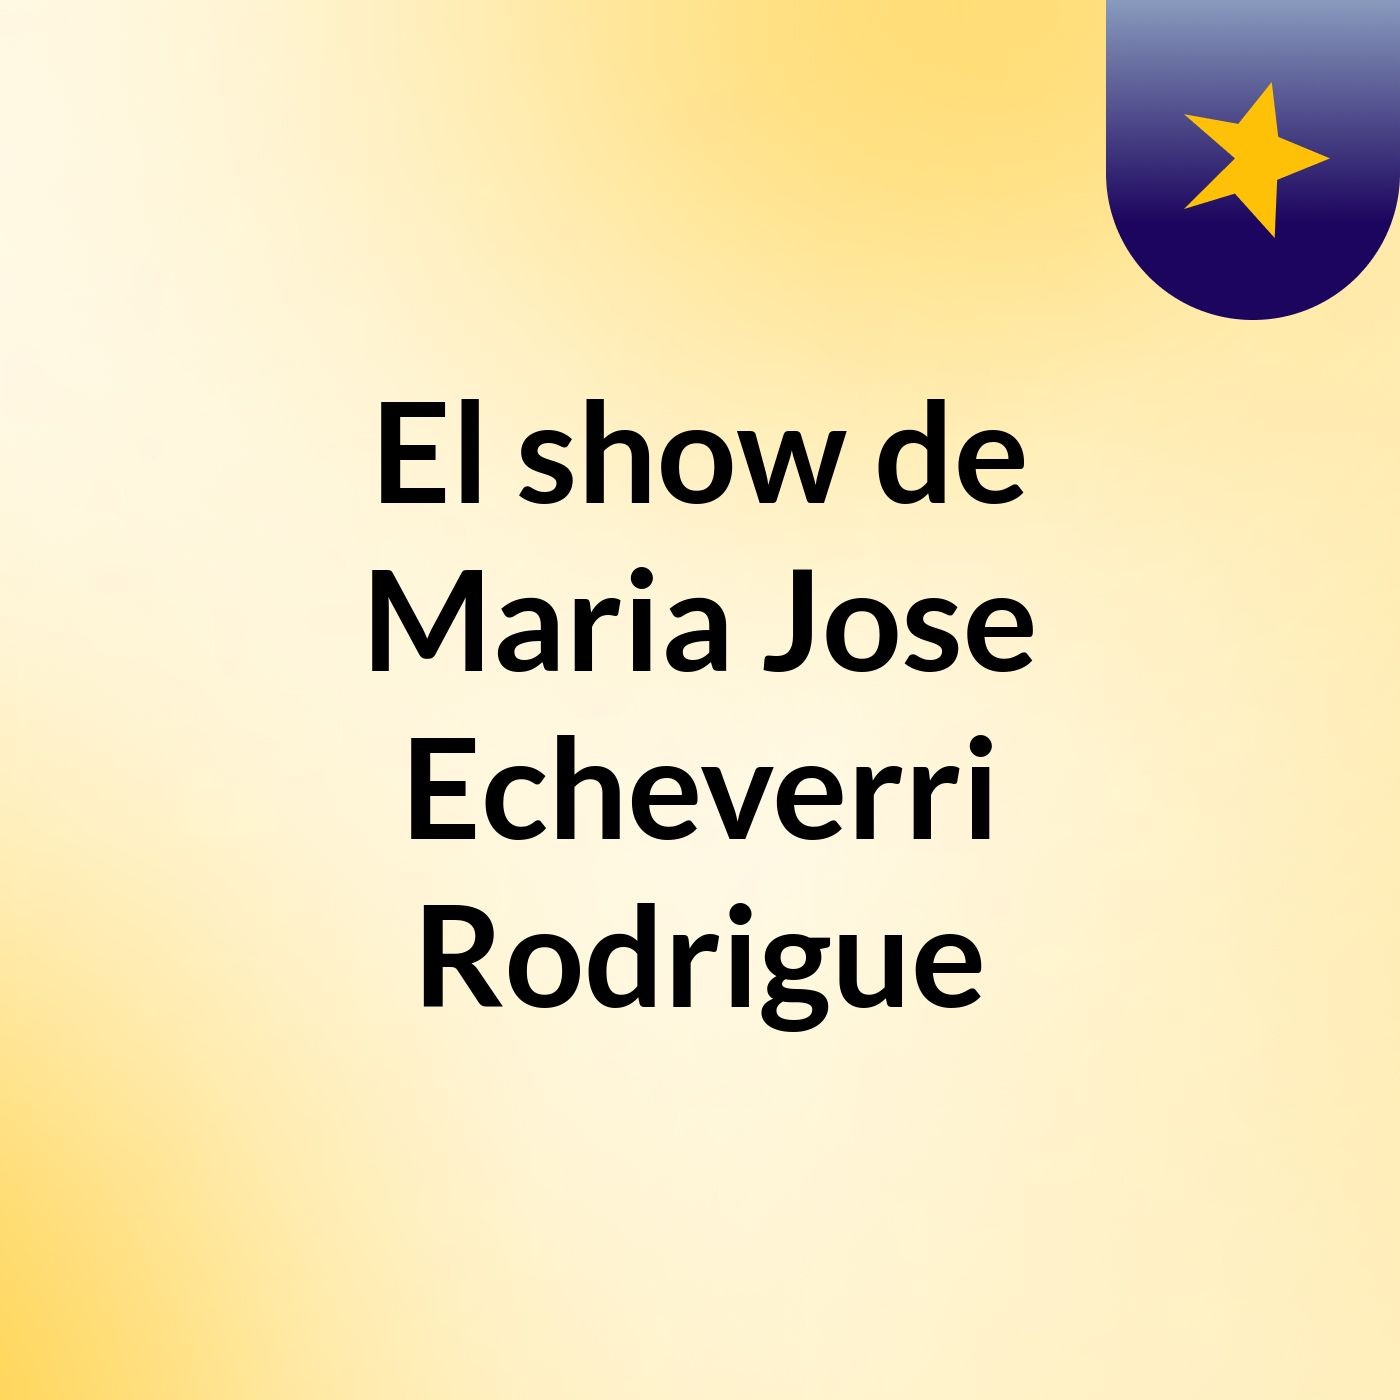 El show de Maria Jose Echeverri Rodrigue